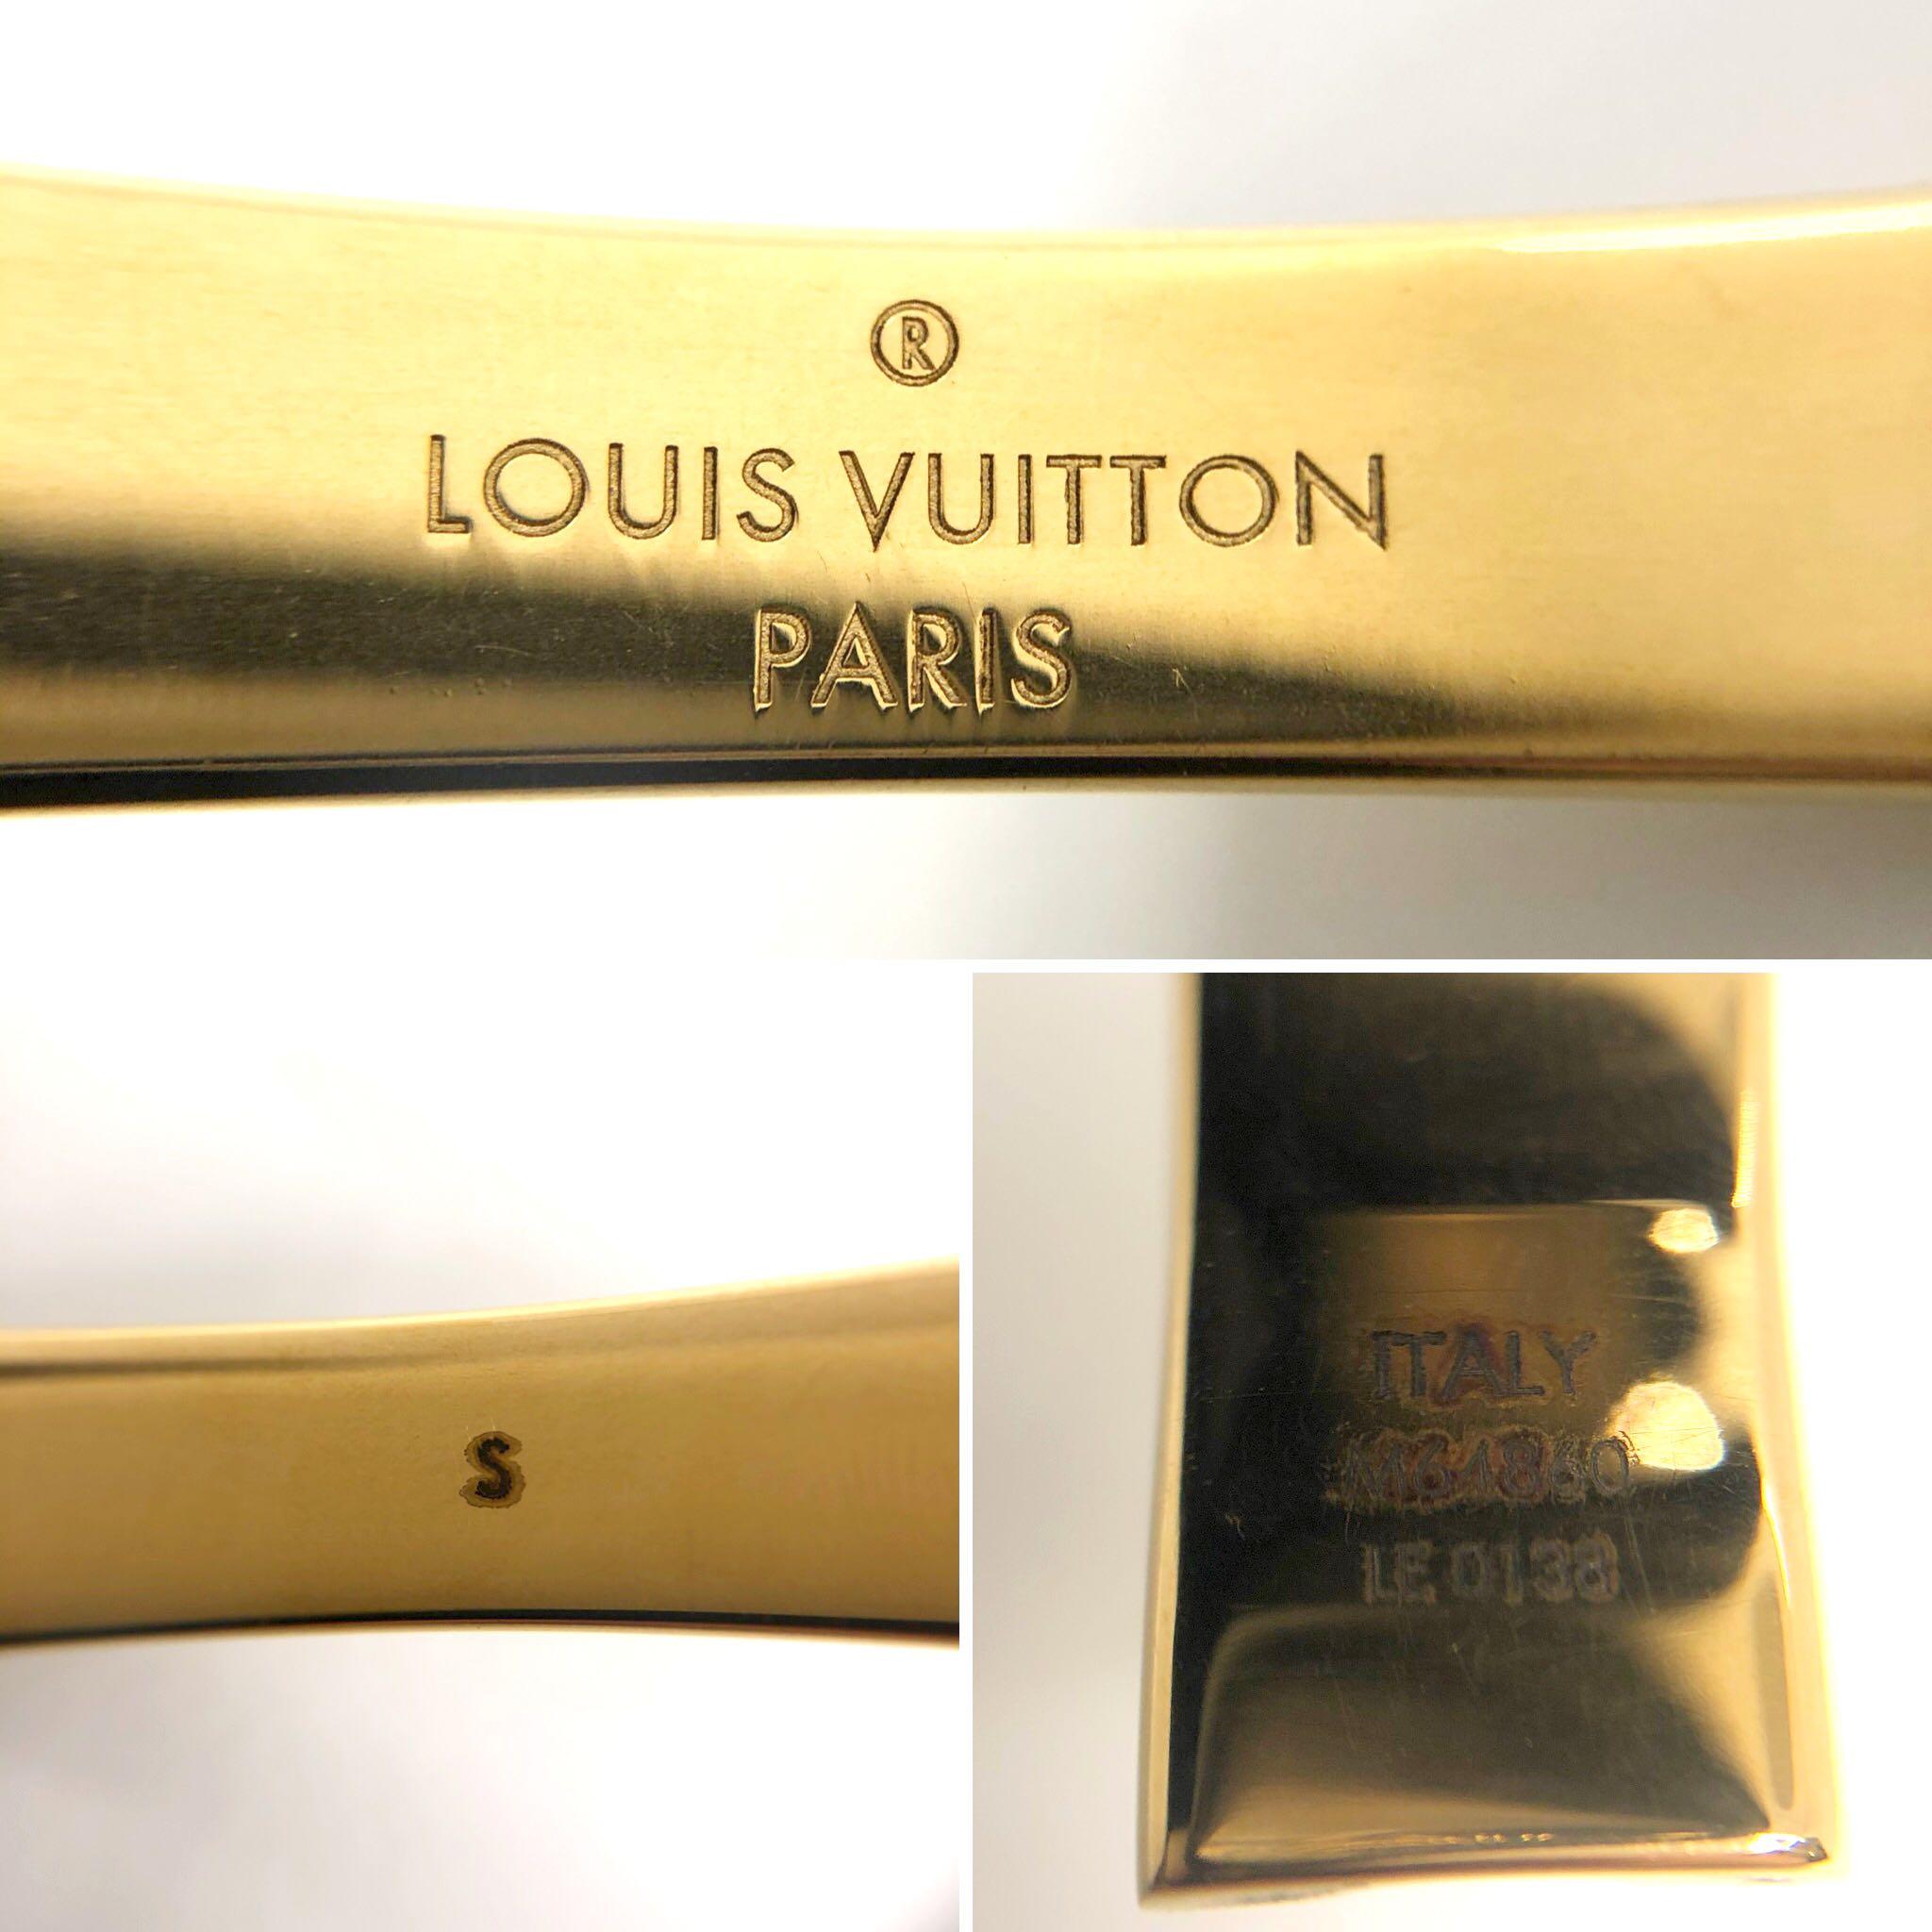 Shop Louis Vuitton Nanogram strass bracelet (M64861, M64860) by lifeisfun